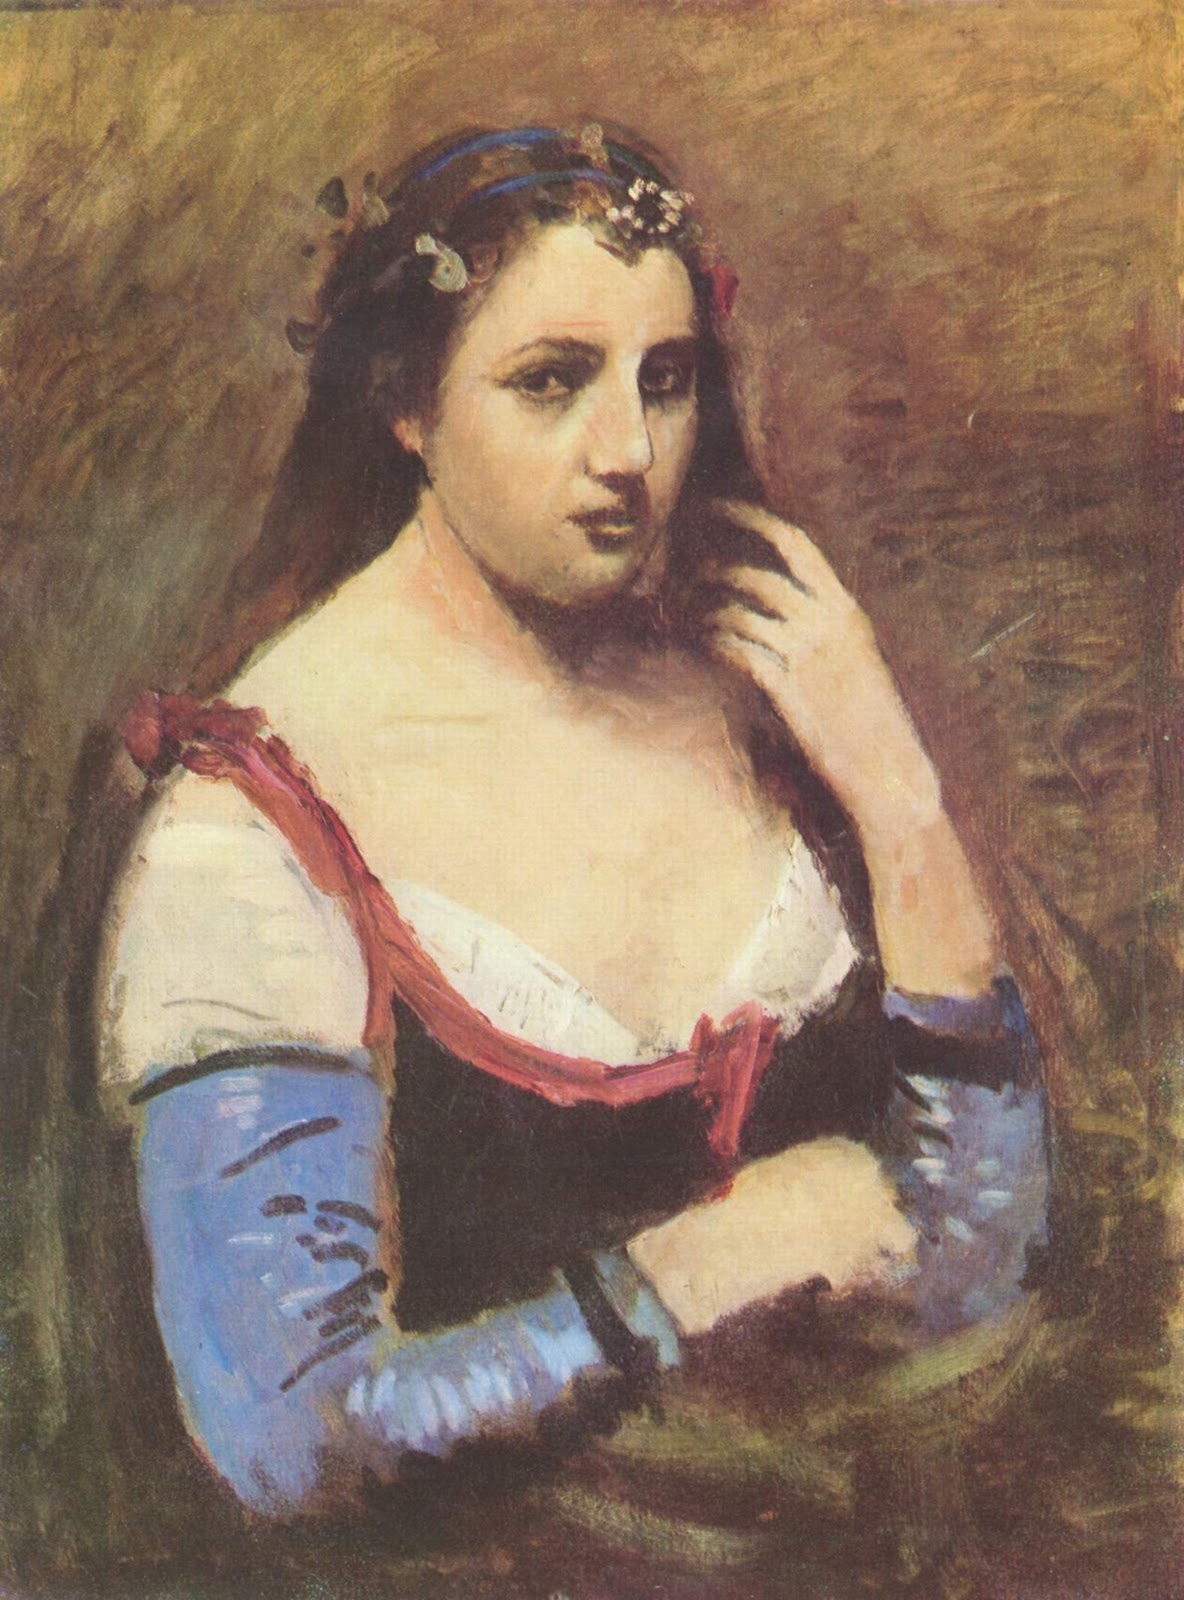 Jean+Baptiste+Camille+Corot-1796-1875 (232).jpg